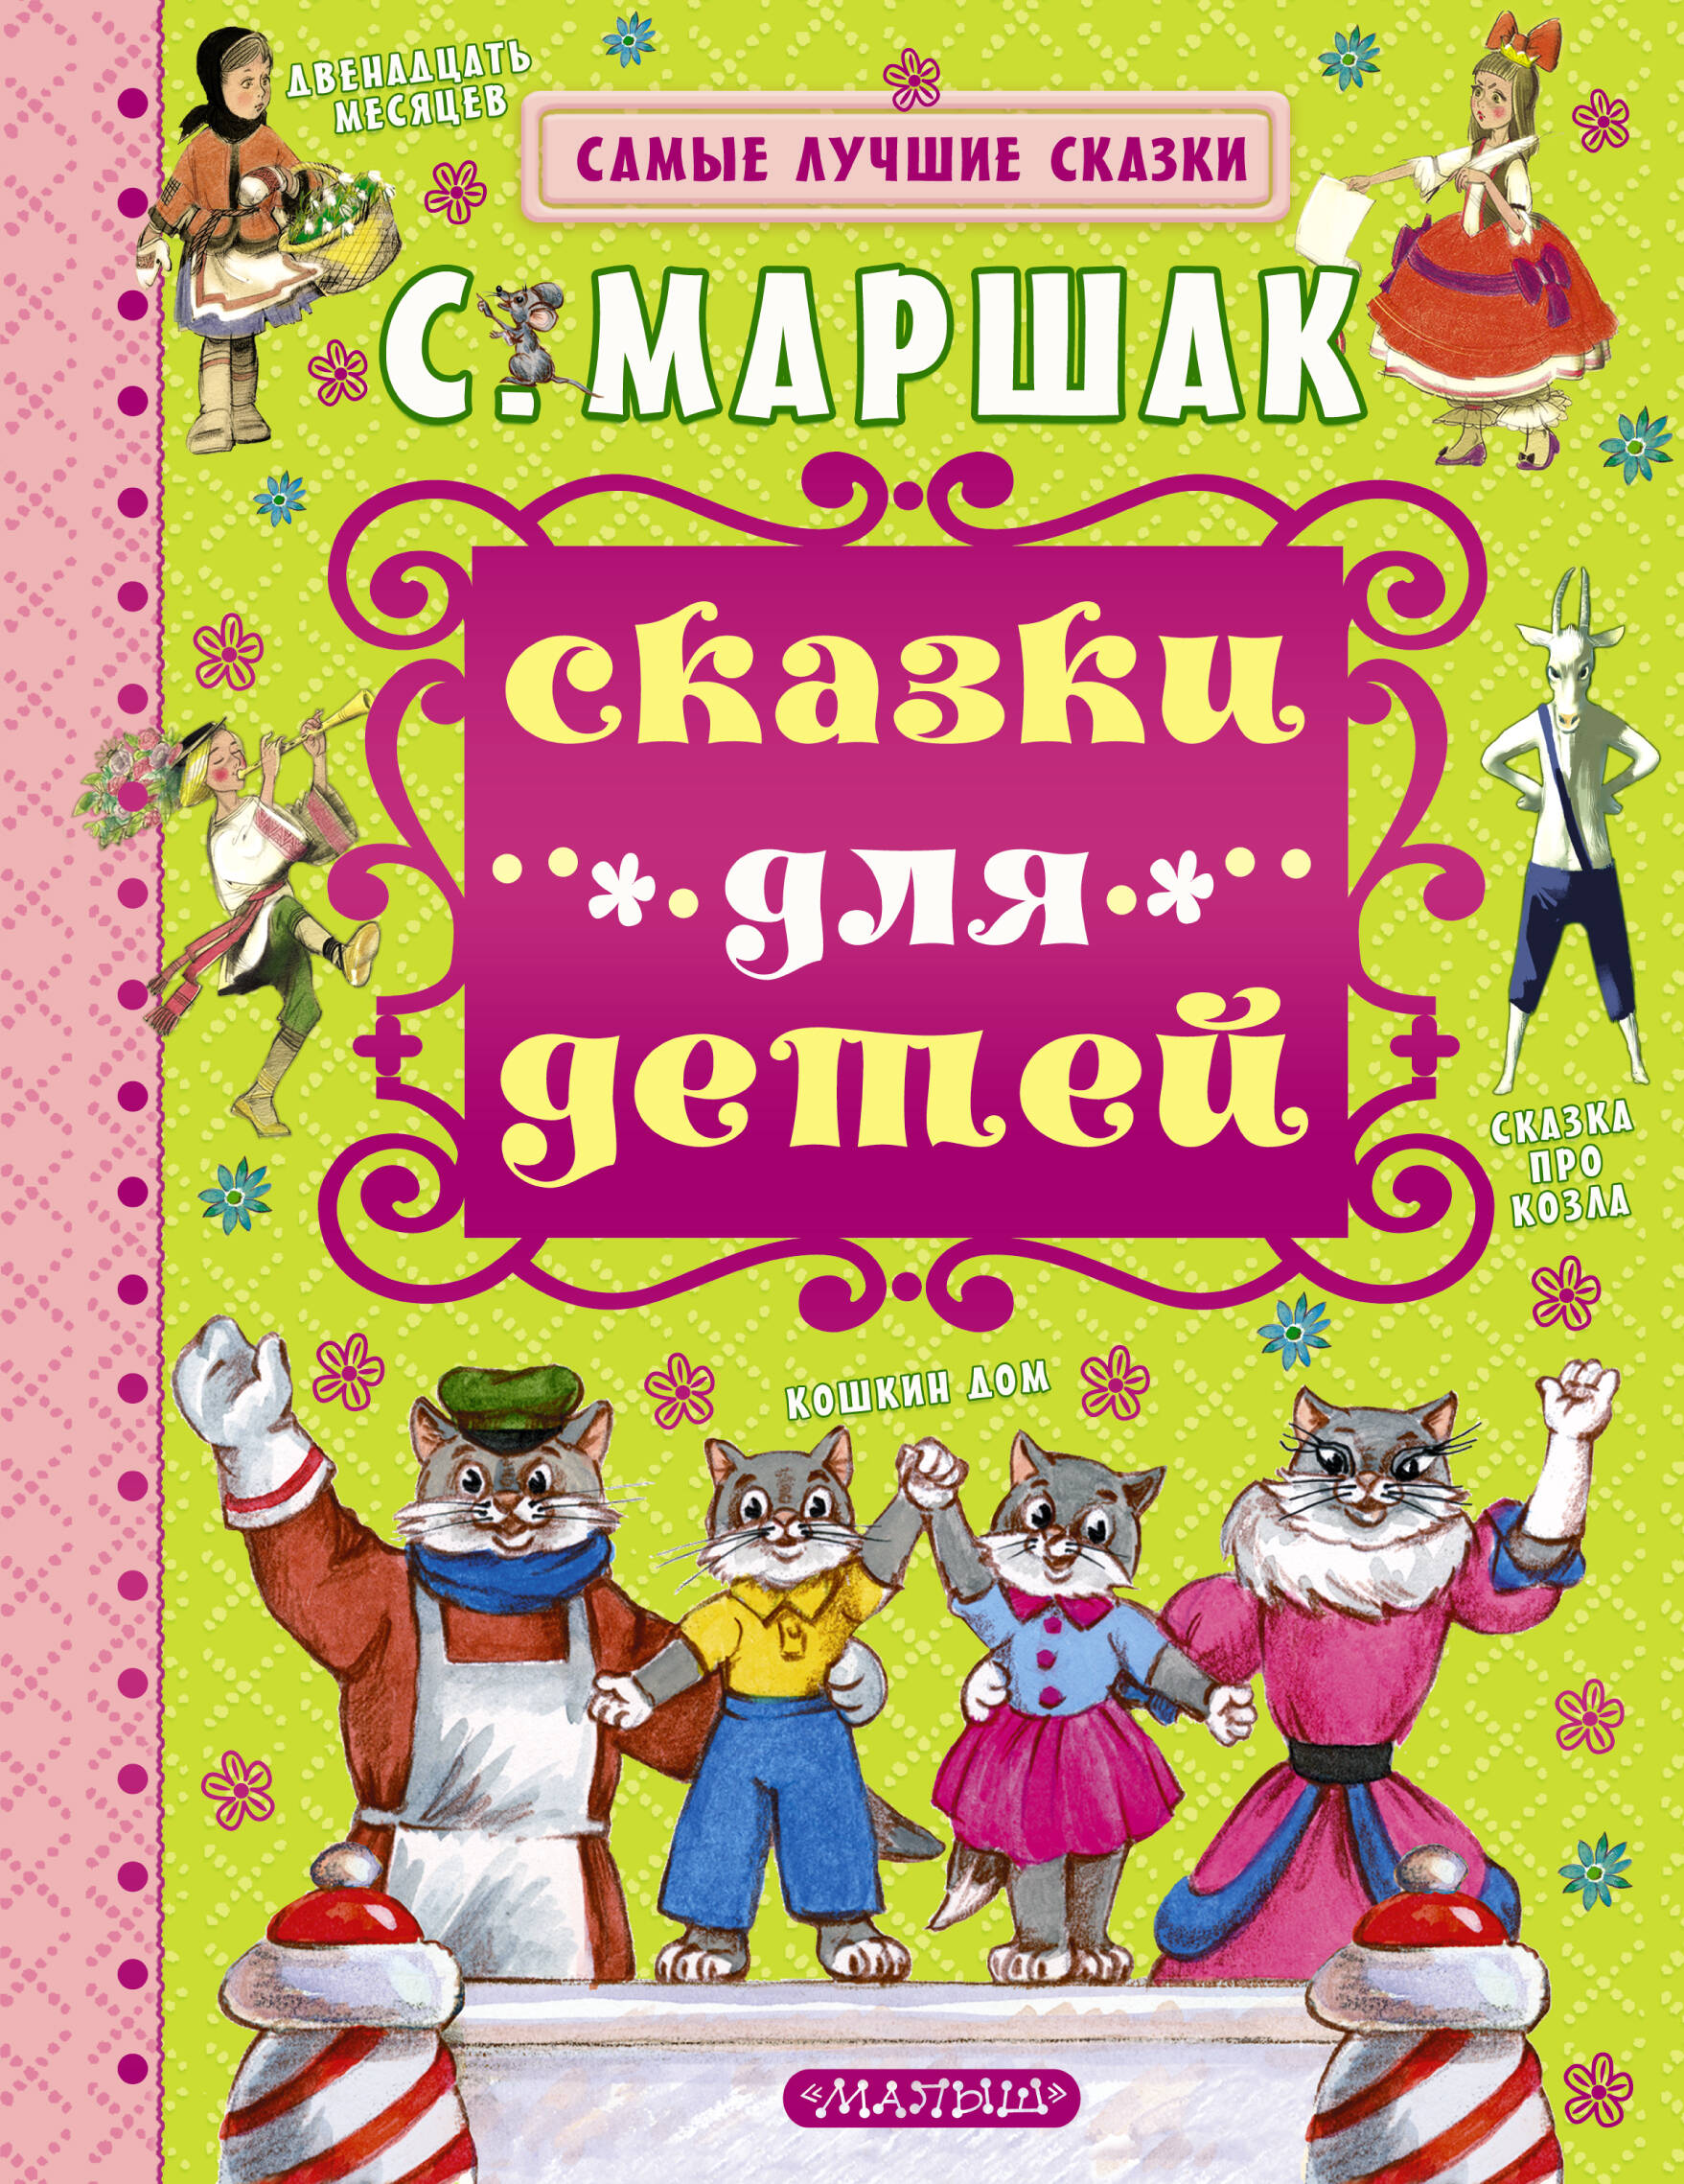 Маршак Самуил Яковлевич Сказки для детей - страница 0